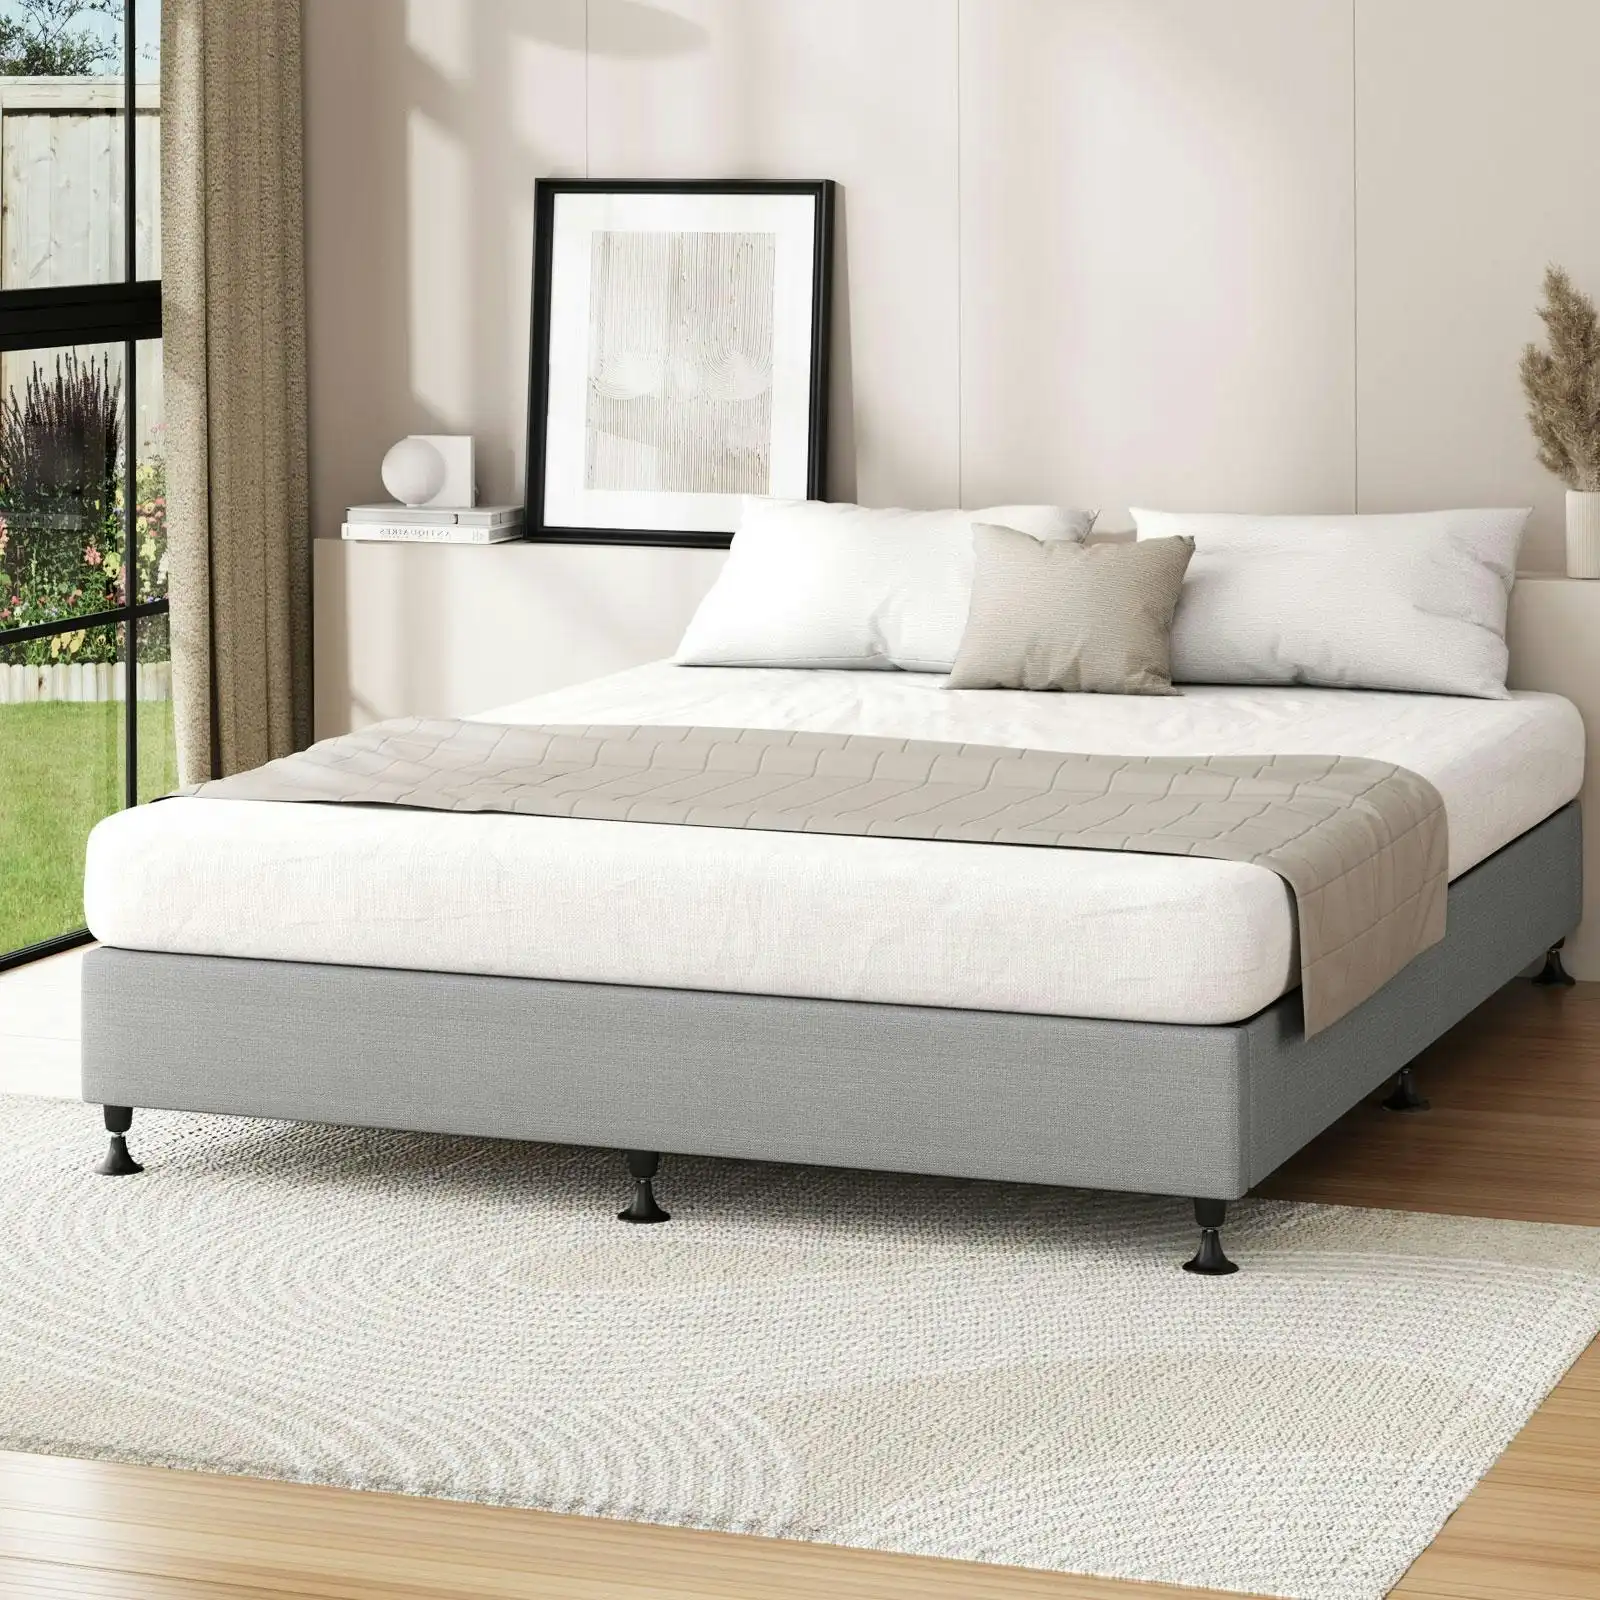 Oikiture Bed Frame King Size Bed Base Platform Grey